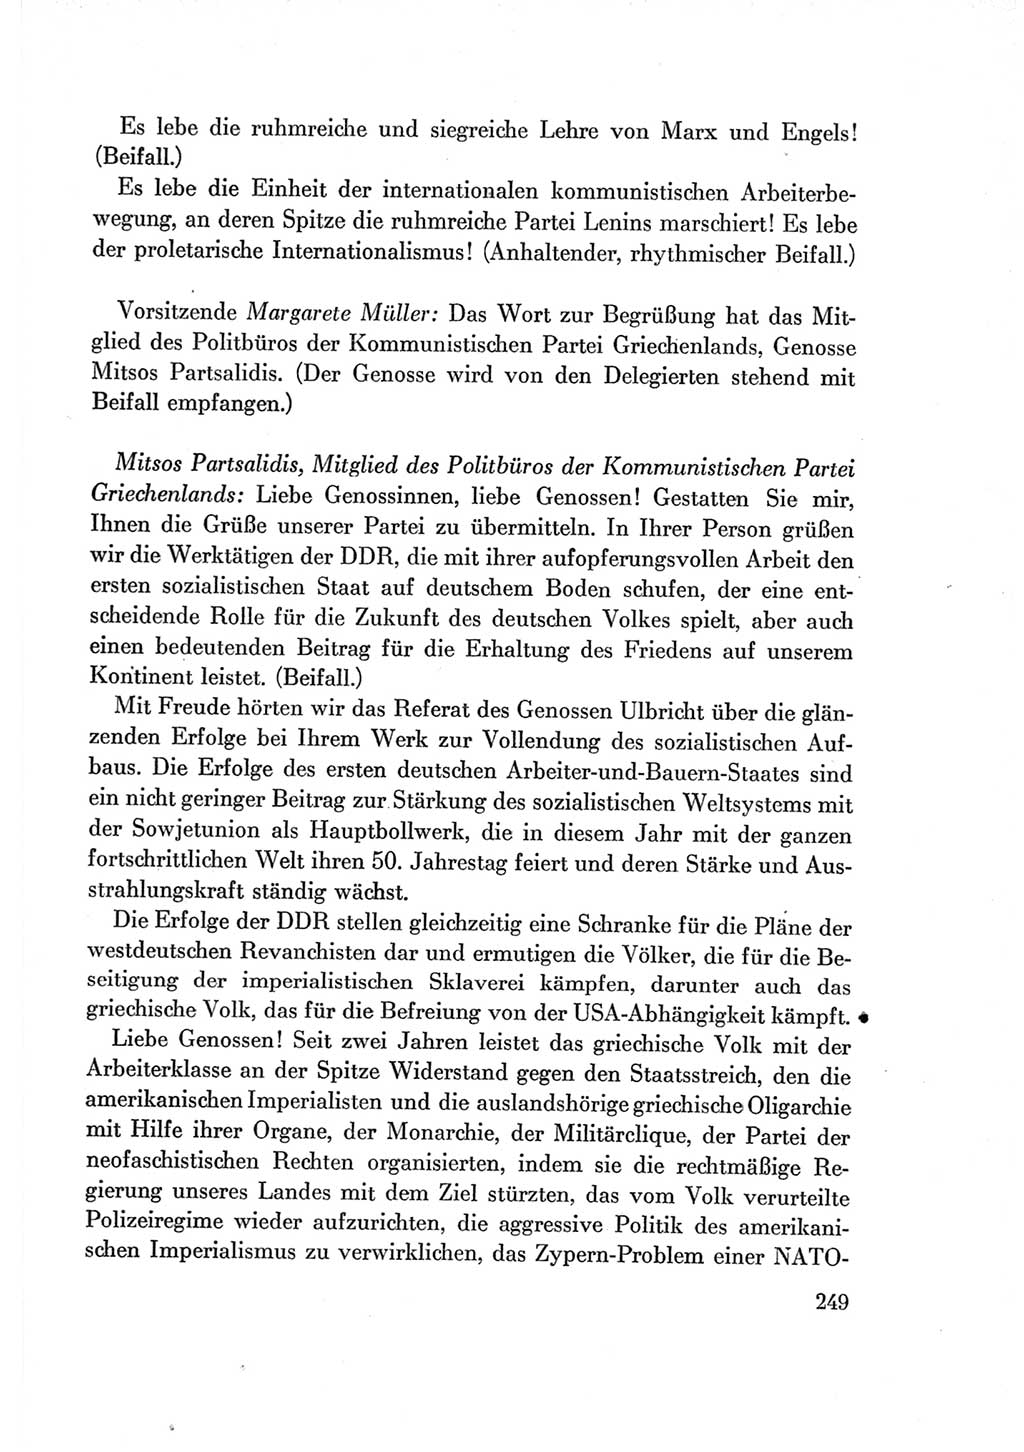 Protokoll der Verhandlungen des Ⅶ. Parteitages der Sozialistischen Einheitspartei Deutschlands (SED) [Deutsche Demokratische Republik (DDR)] 1967, Band Ⅱ, Seite 249 (Prot. Verh. Ⅶ. PT SED DDR 1967, Bd. Ⅱ, S. 249)